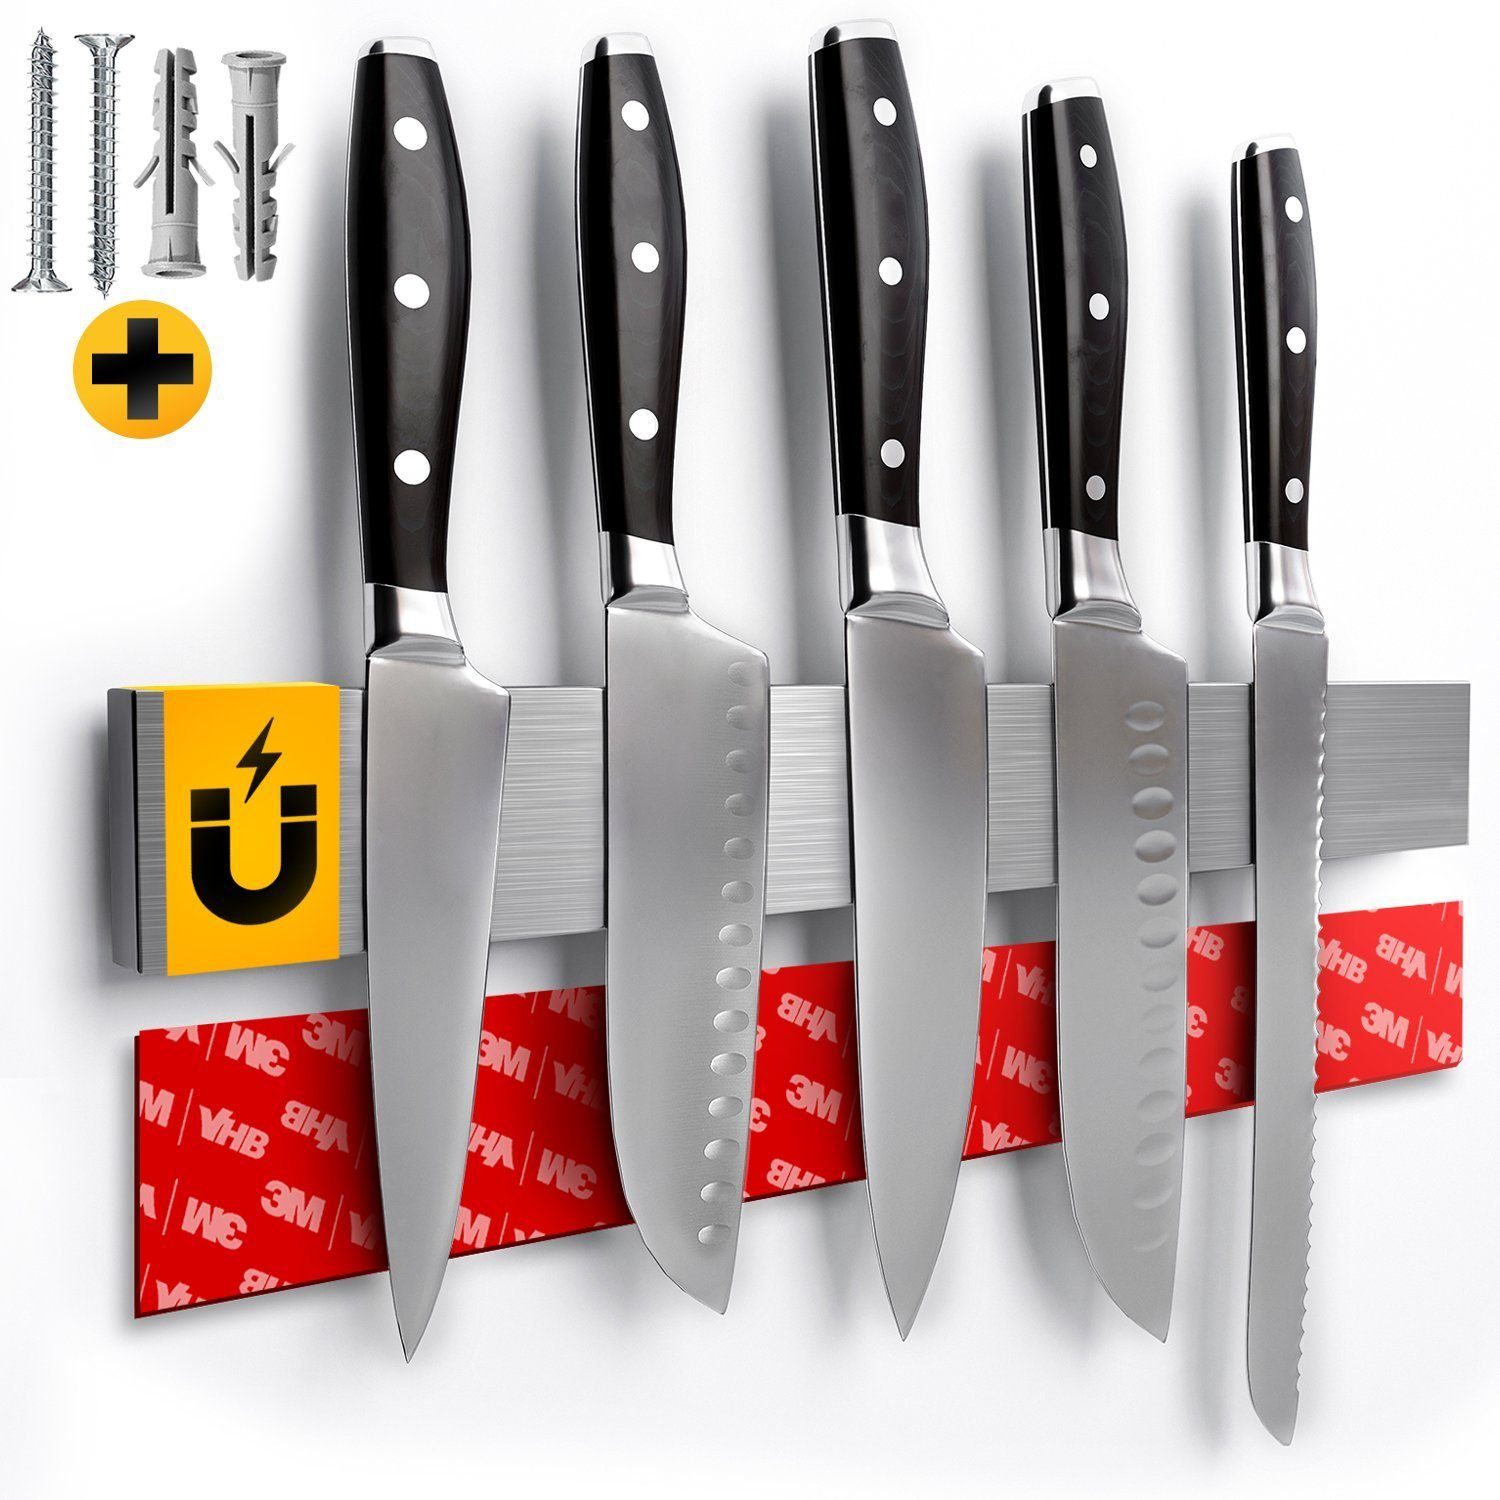 Sidorenko Wand-Magnet Messer-Leiste Magnetleiste Messer 40cm - selbstklebend mit 3M VHB Klebeband - Messerleiste Edelstahl für Küchenutensilien oder Werkzeugen - Messerhalter magnetisch Wandmontage für Küche ohne Bohren (1tlg) | Messerblöcke